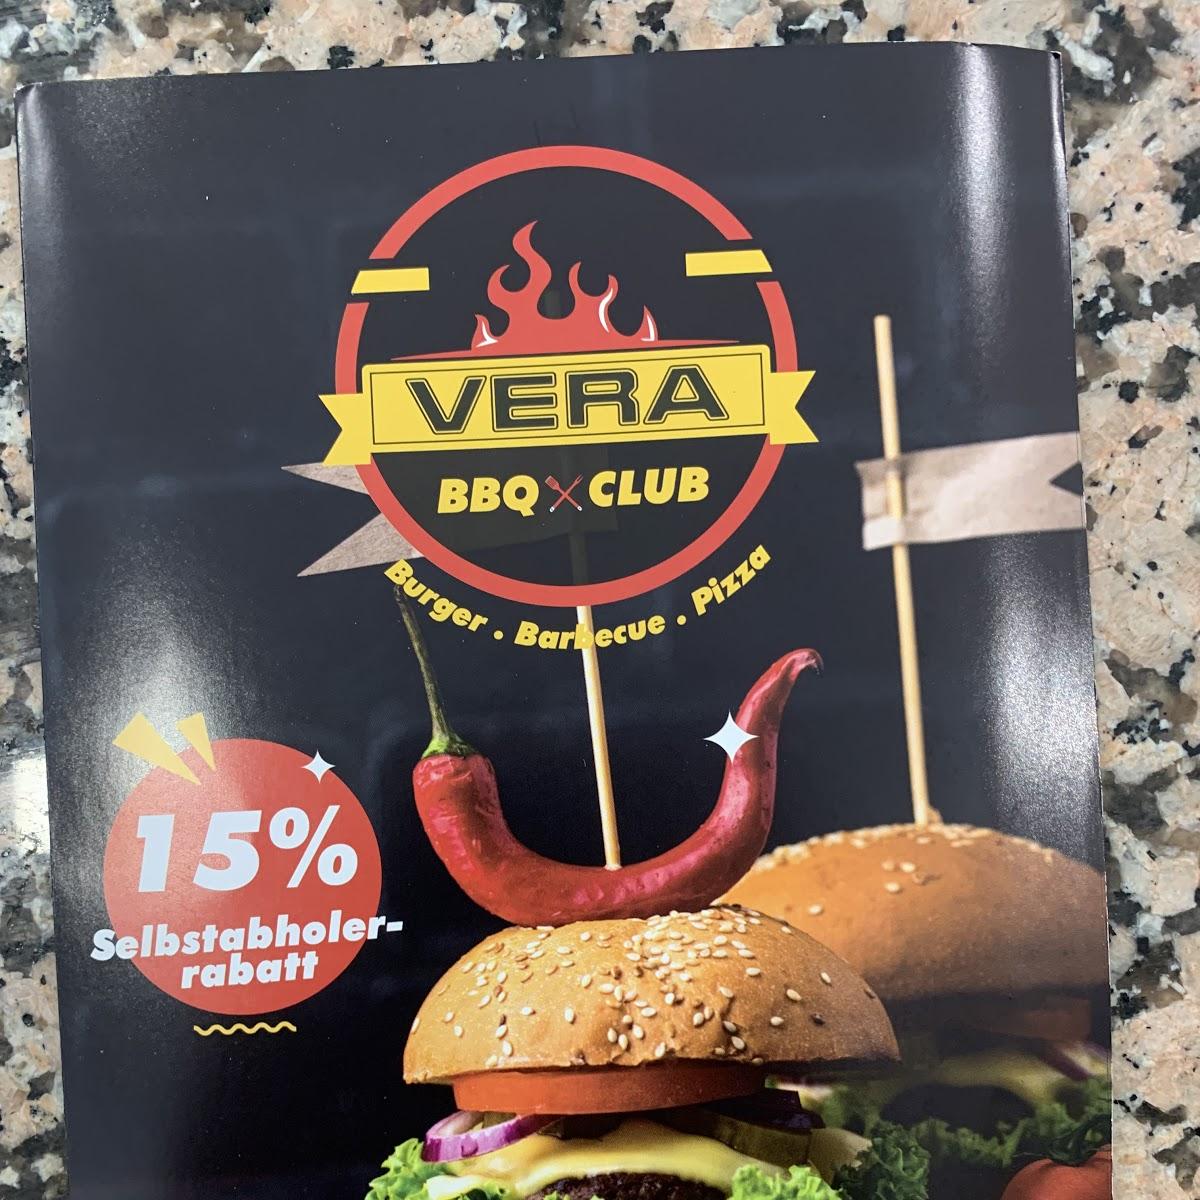 Restaurant "Vera BBQ Club" in Bremen